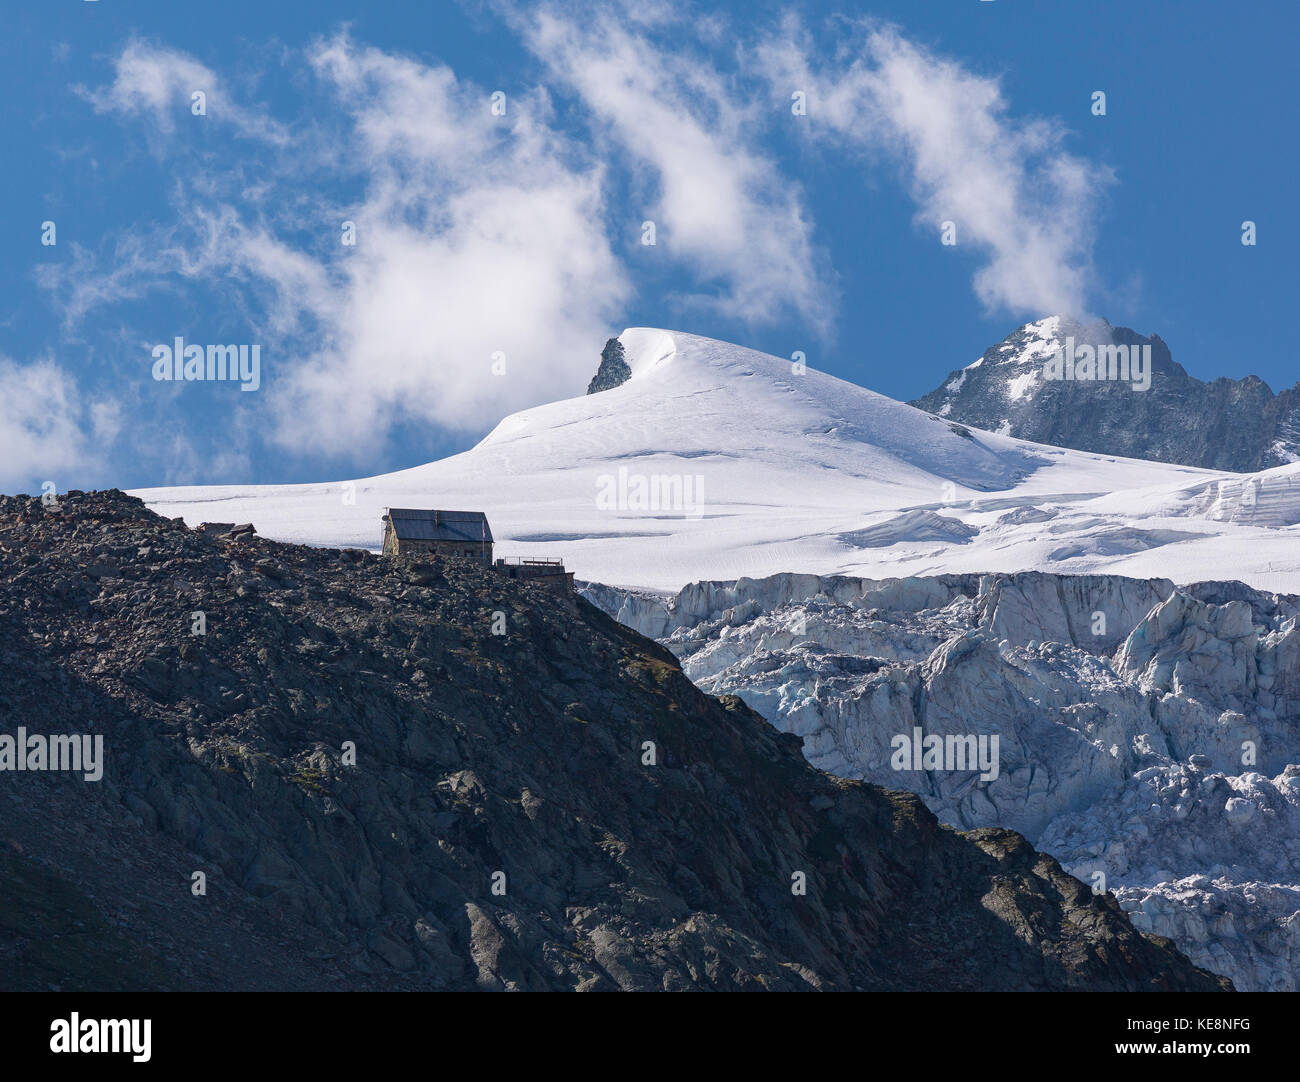 La vallée de Moiry, Suisse - cabane de Moiry cabane de montagne sur le glacier de Moiry, paysage de montagne, dans les Alpes Pennines dans le canton du Valais. Banque D'Images